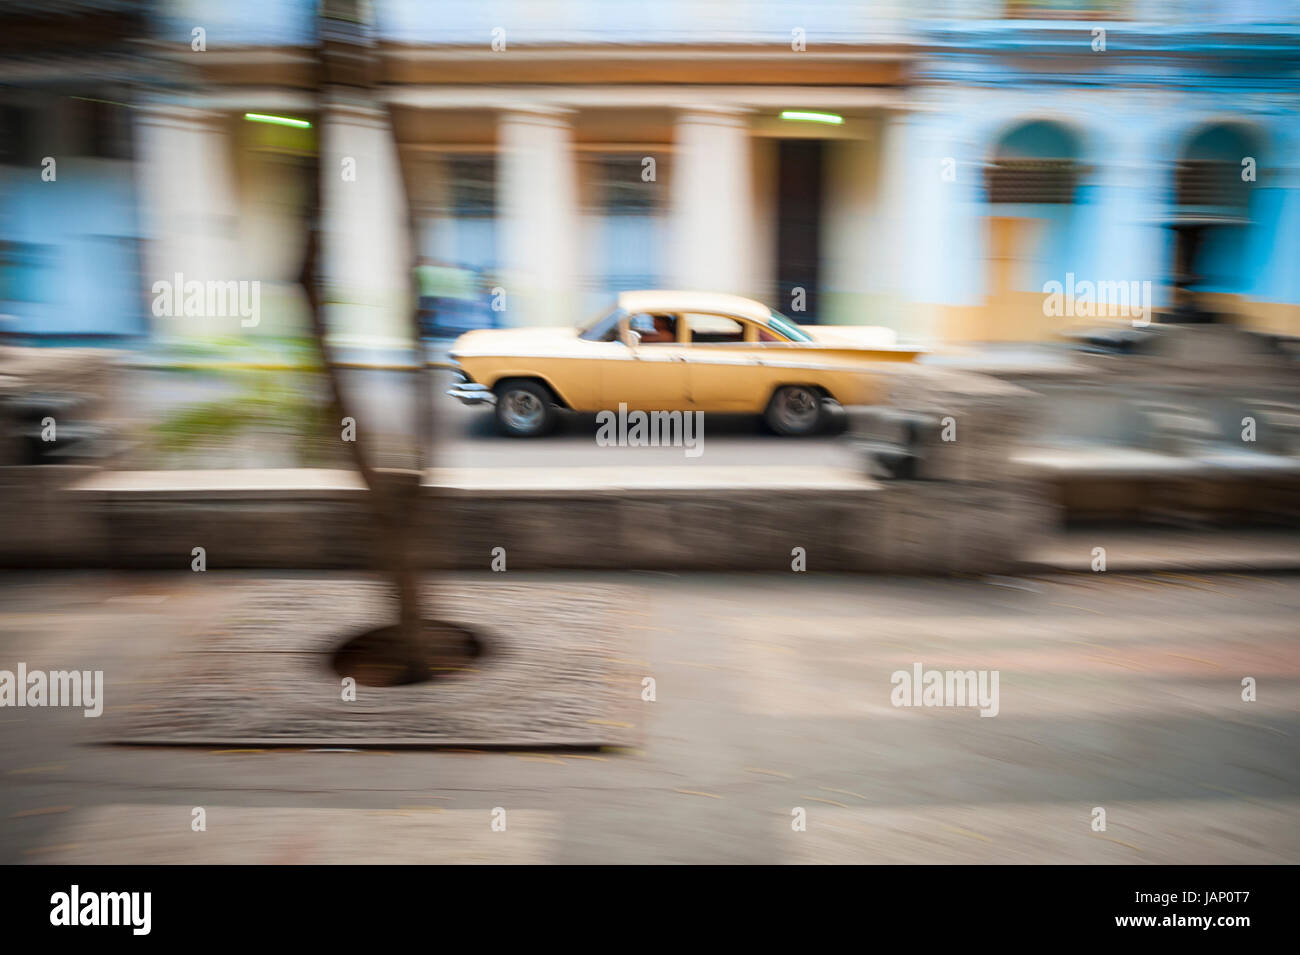 Rallentare la velocità dello shutter motion blur vista passando classic american car a l'Avana, Cuba Foto Stock